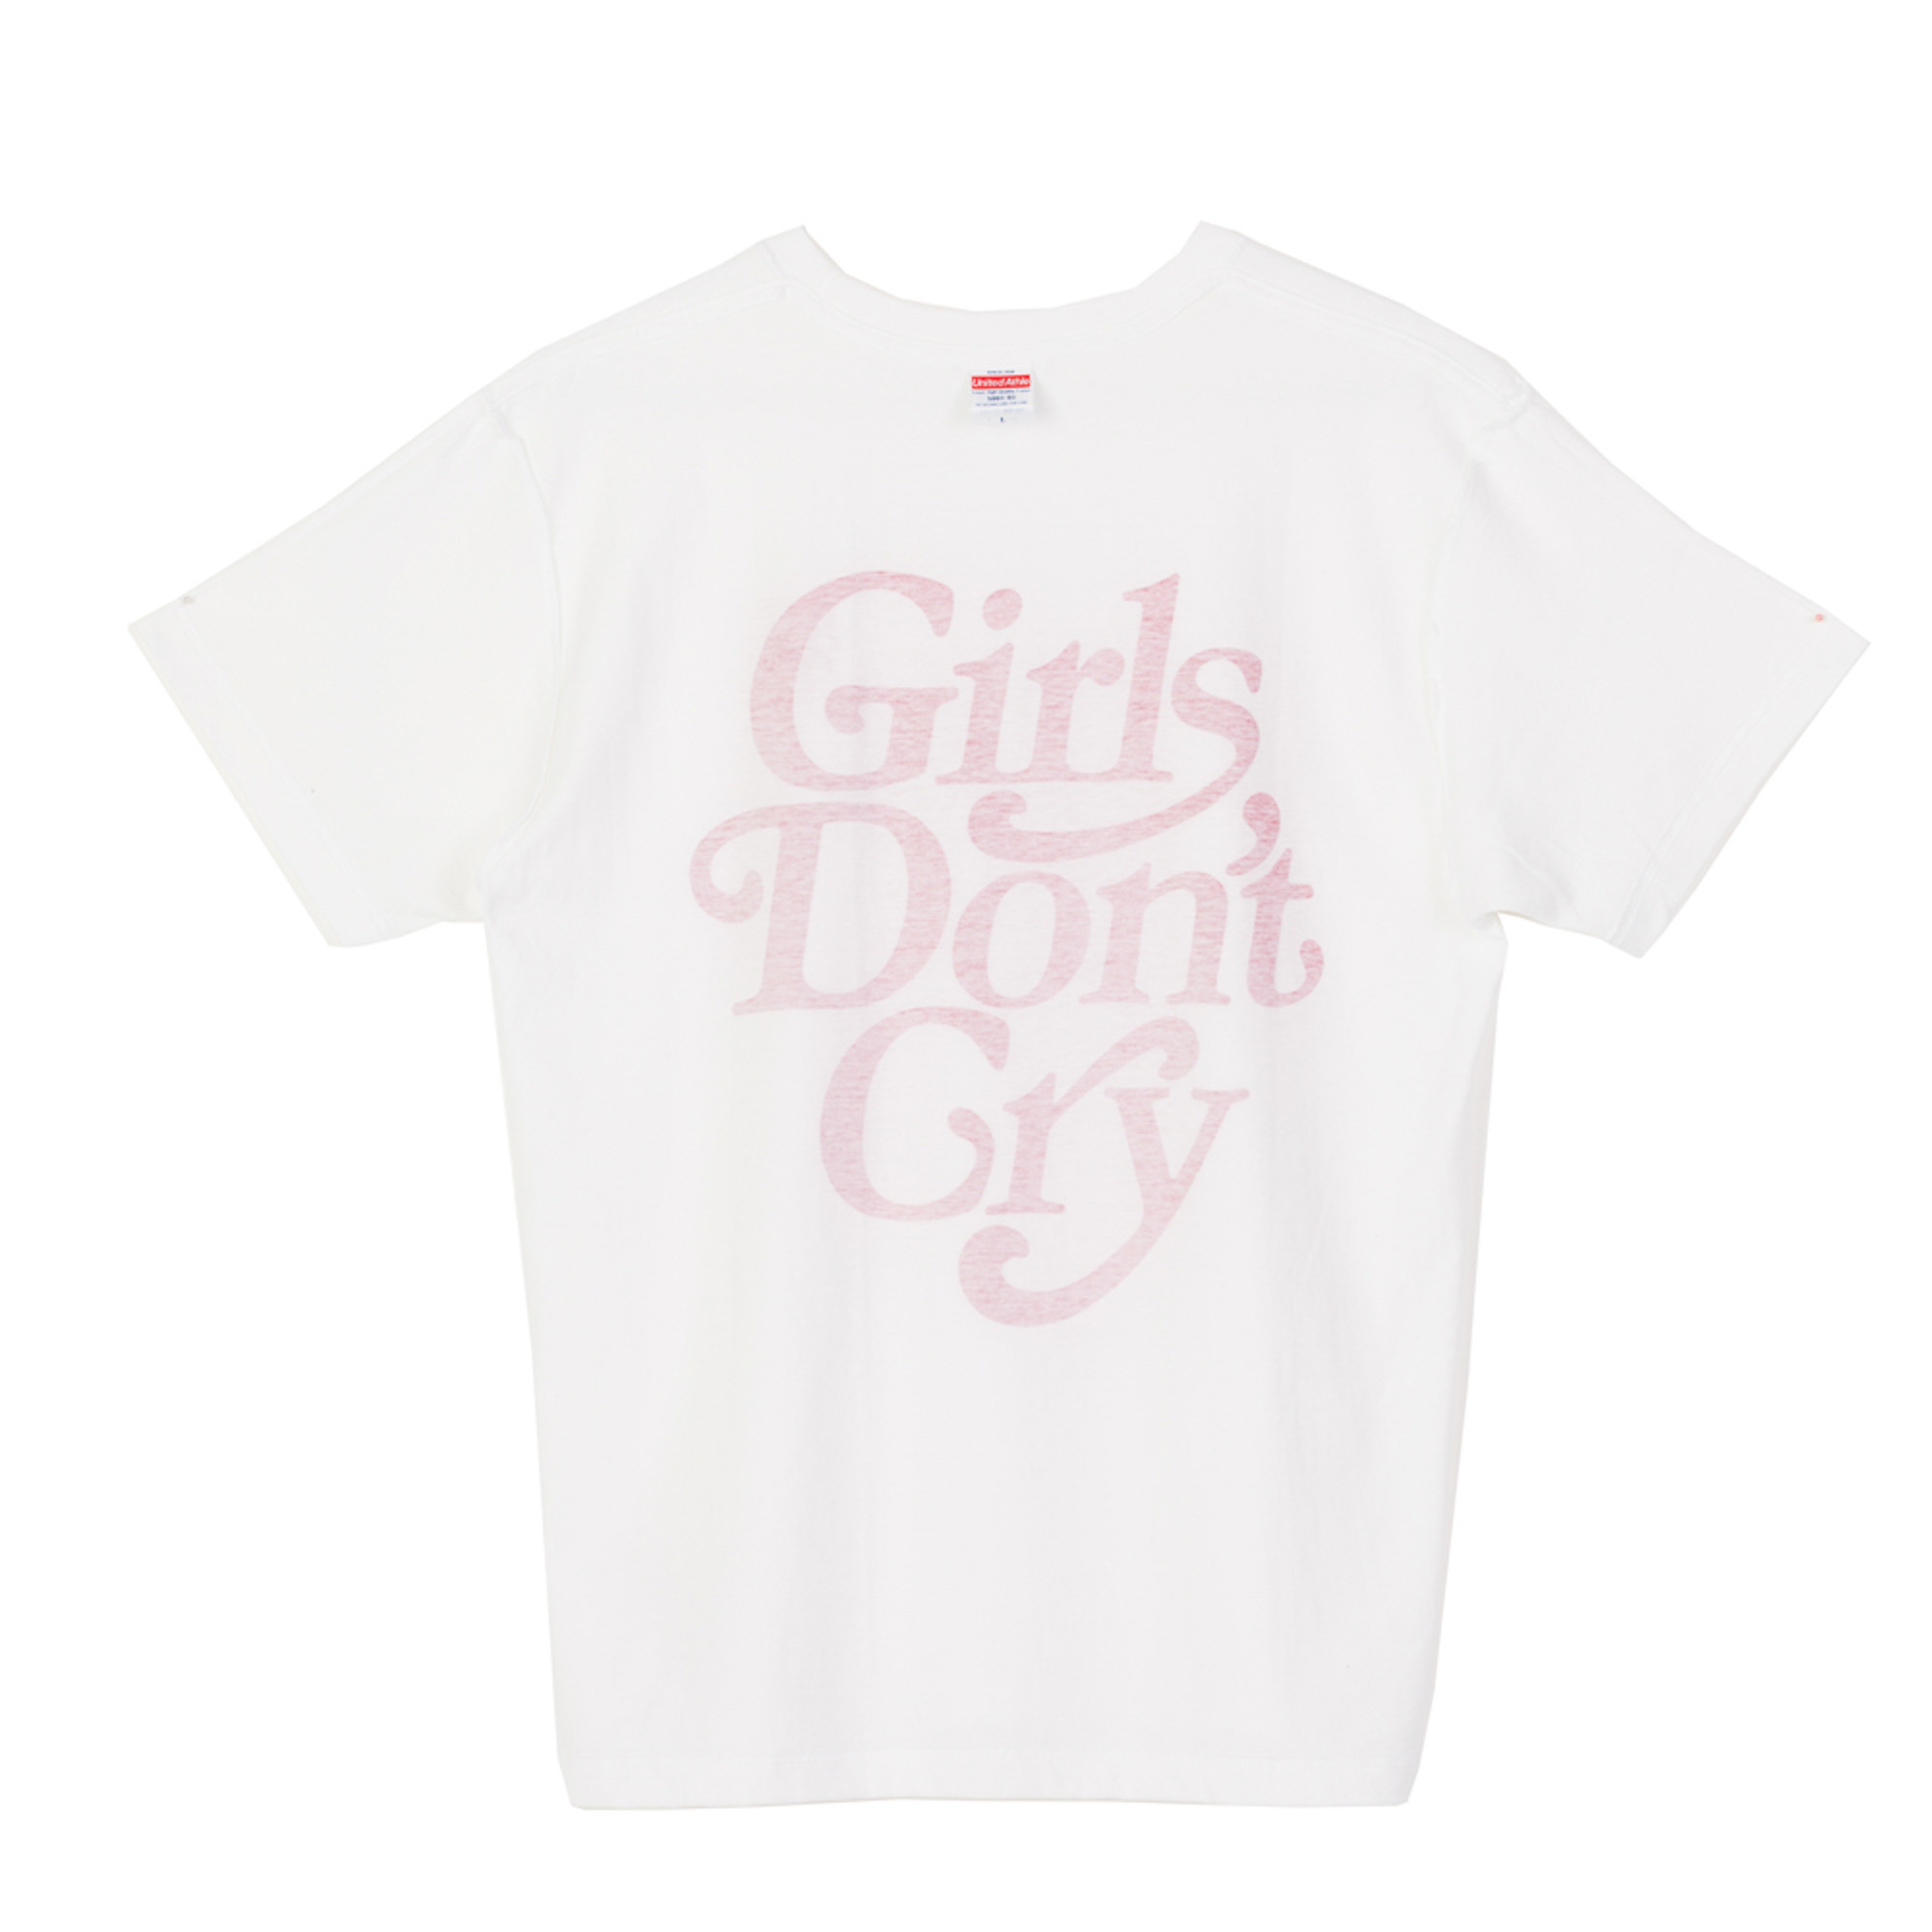 くらしを楽しむアイテム Girls Girls Don´t Cry Don PHINGERIN 広島